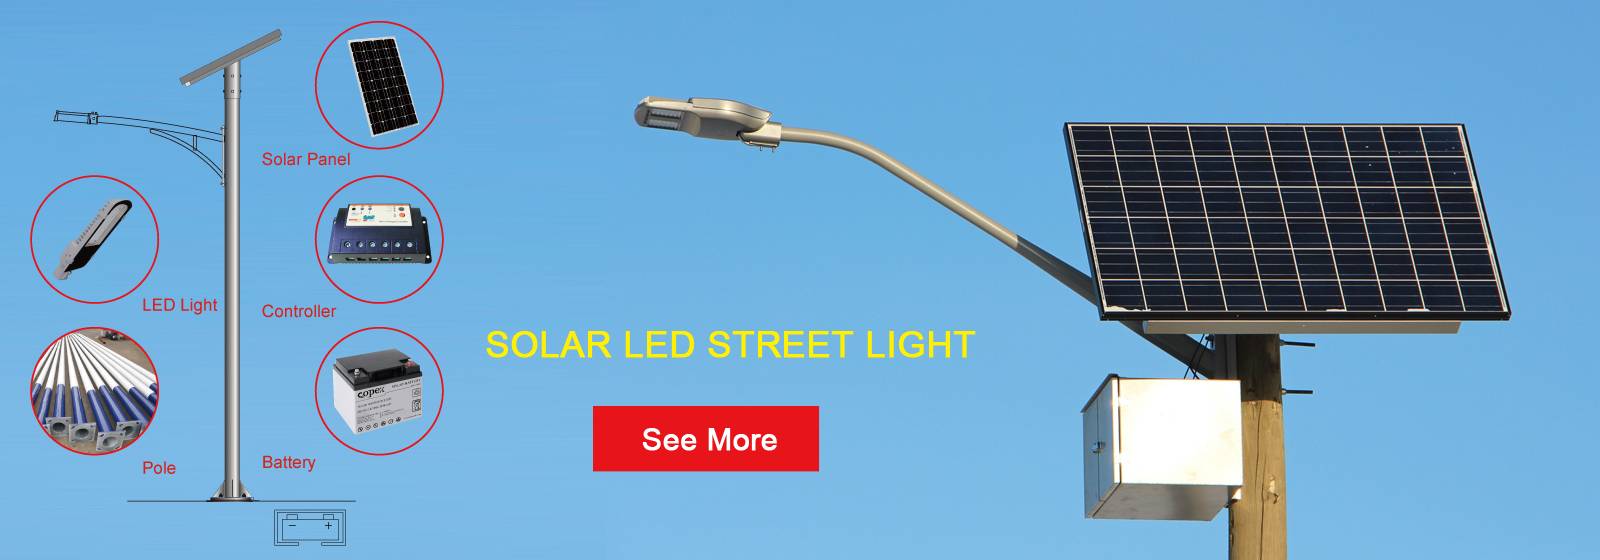 Luz de calle led solar